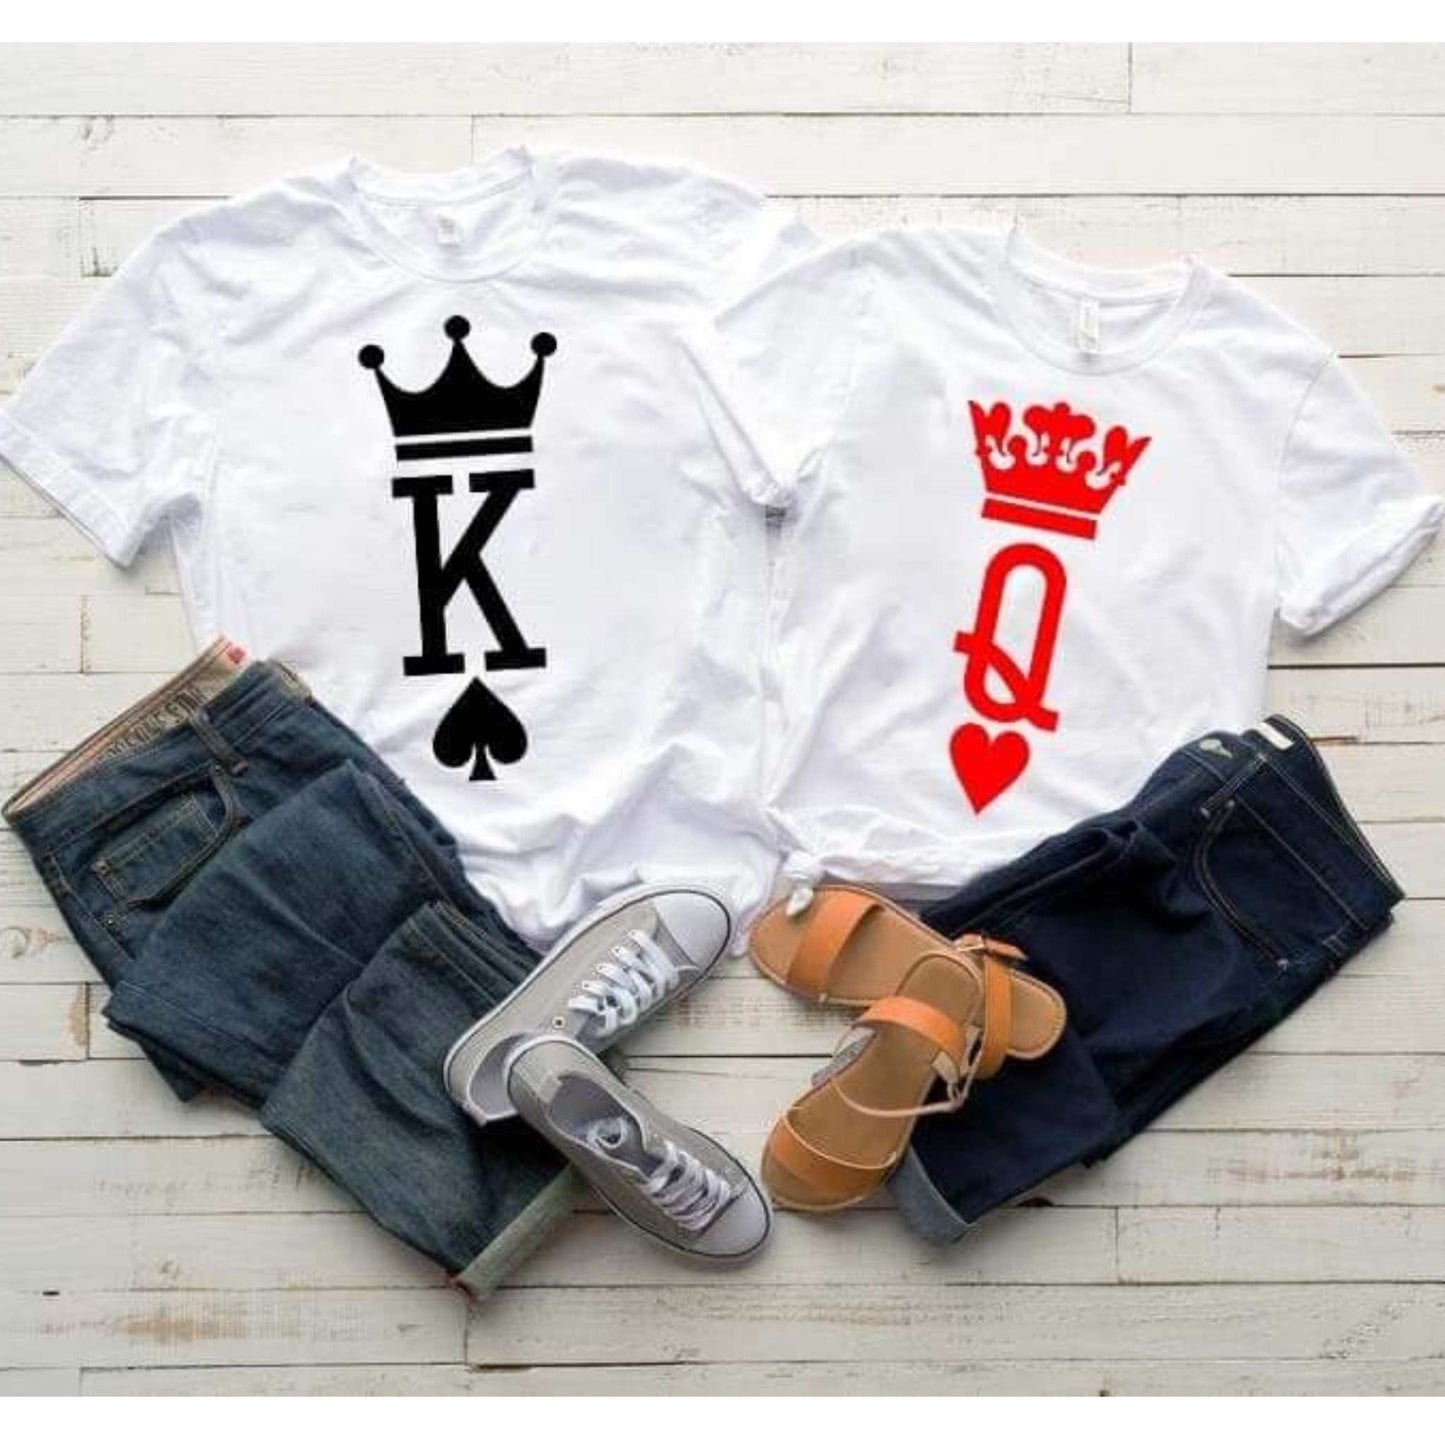 Tricouri de cuplu, King and Queen, 100% bumbac, personalizat pentru ziua indragostitilor sau aniversare de cuplu.